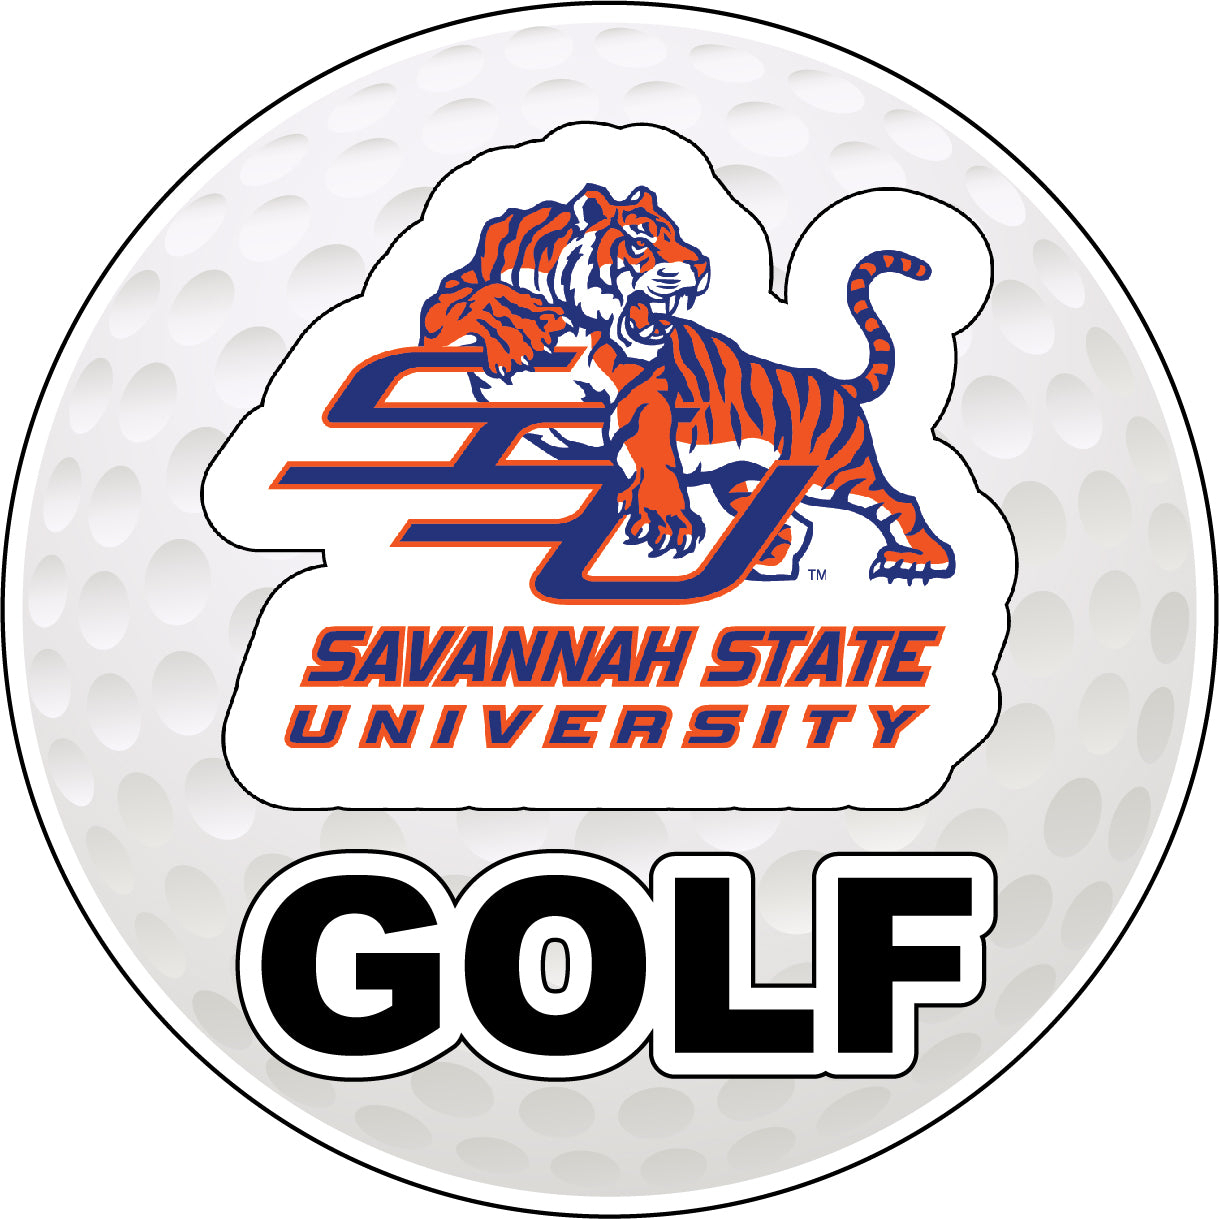 Savannah State University 4-Inch Round Golf Ball Vinyl Decal Sticker